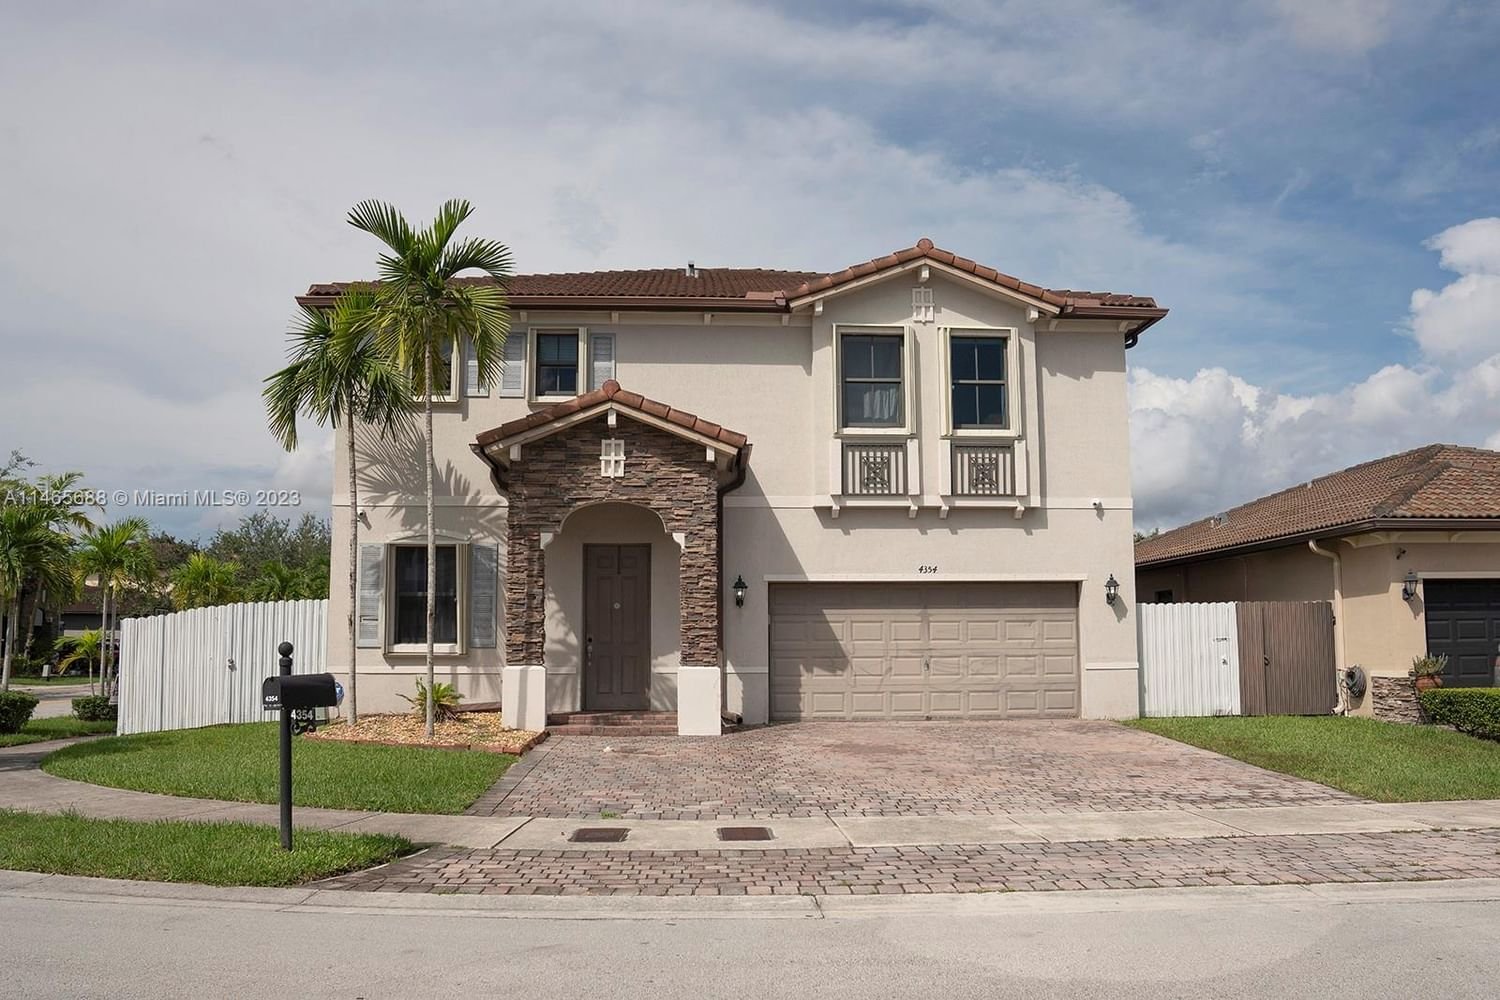 Real estate property located at 4354 165th Ct, Miami-Dade County, INTERLAKEN, Miami, FL